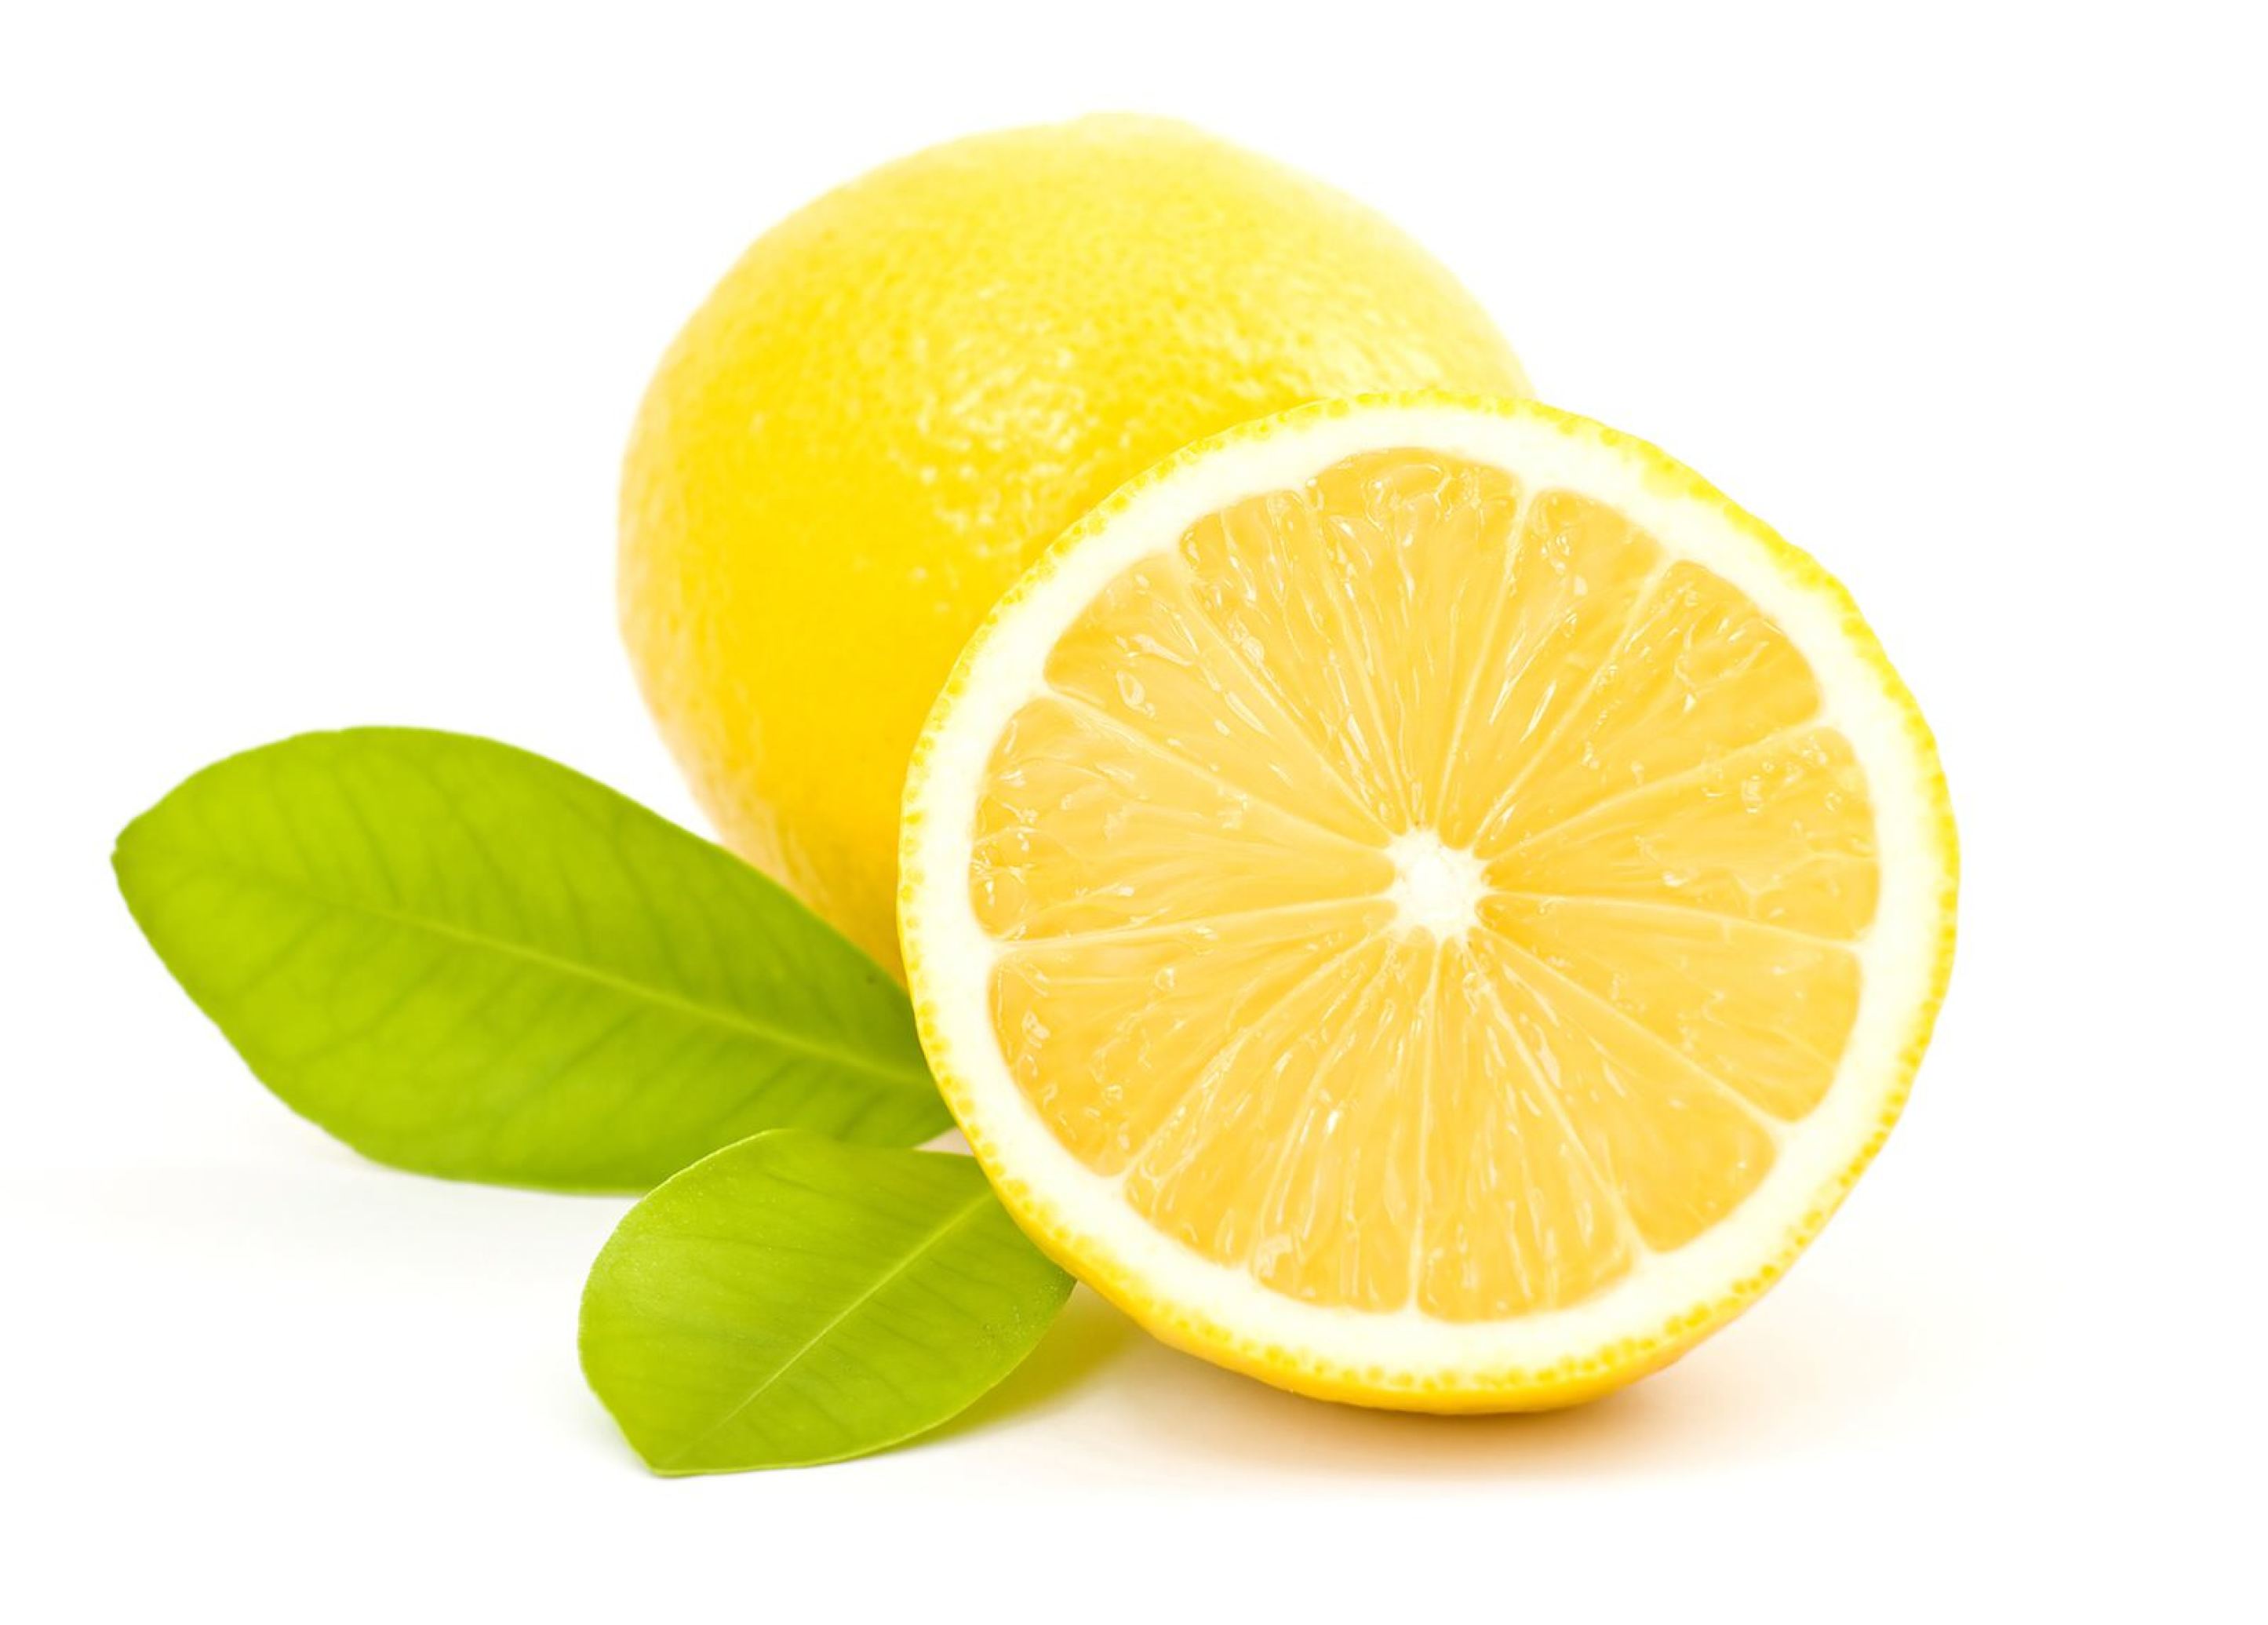 لیمو شیرین